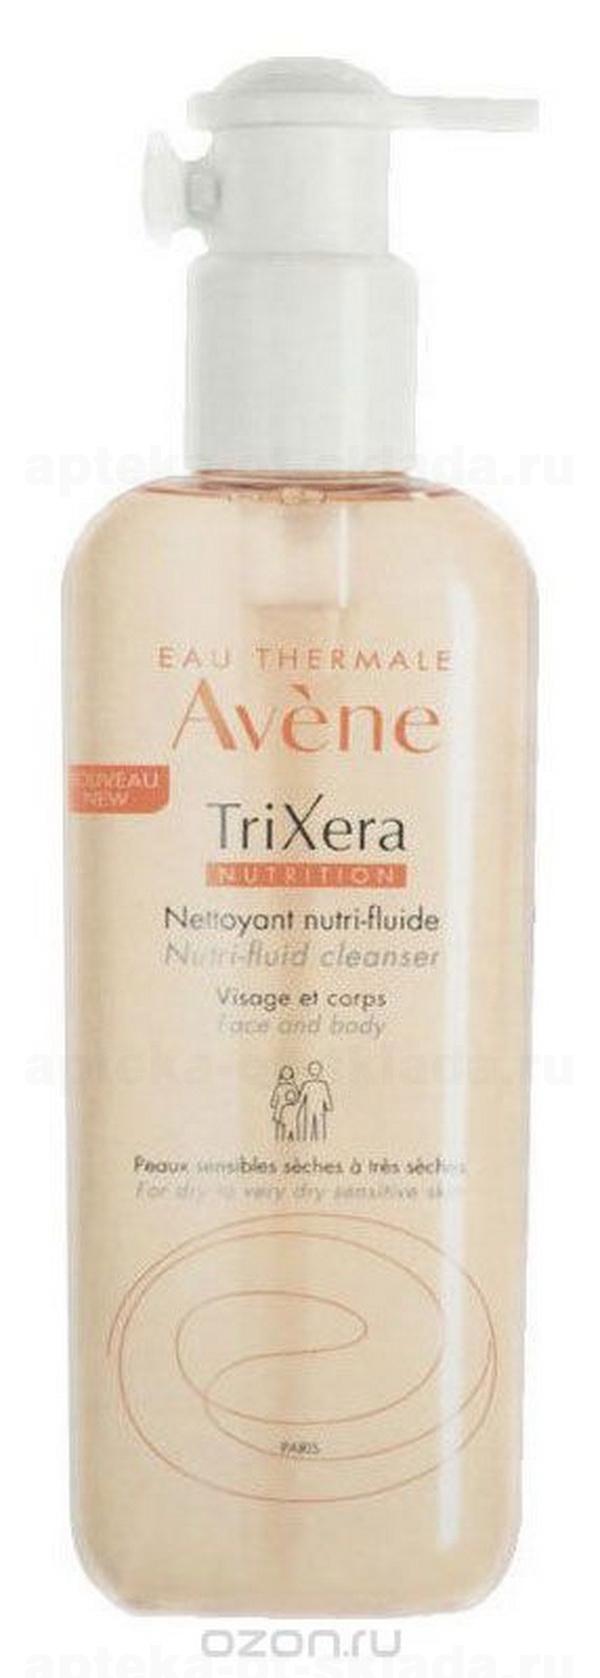 Avene Trixera питательный очищающий гель для лица и тела для всей семьи для сухой/чувствительной кожи 400мл